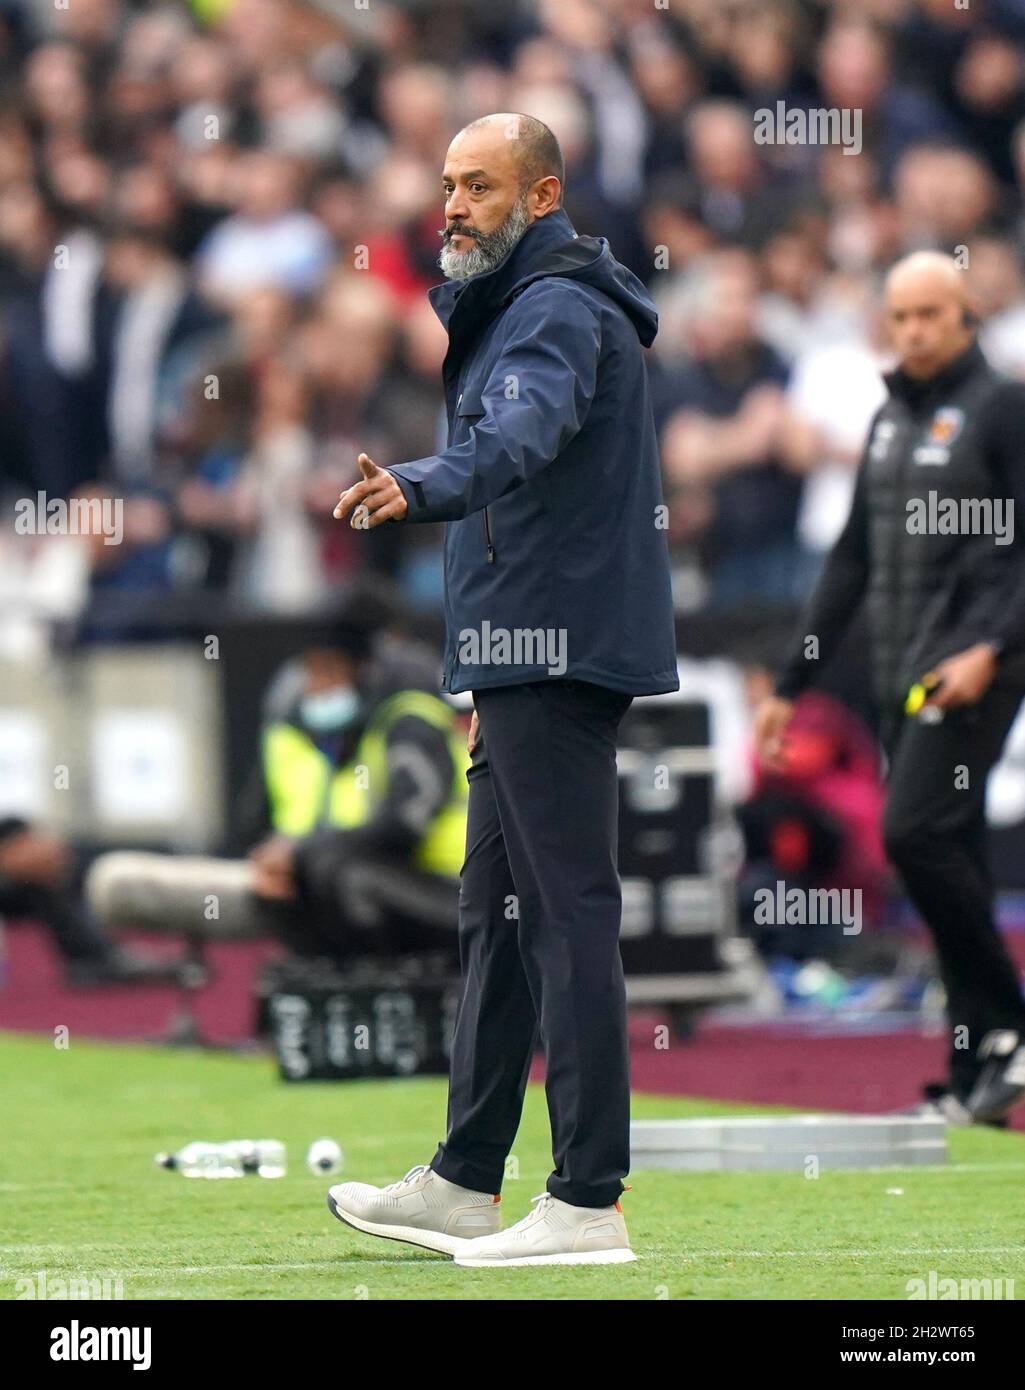 Tottenham Hotspur Manager Nuno Espirito Santo gestes pendant le match de la Premier League au London Stadium, Londres.Date de la photo: Dimanche 24 octobre 2021. Banque D'Images